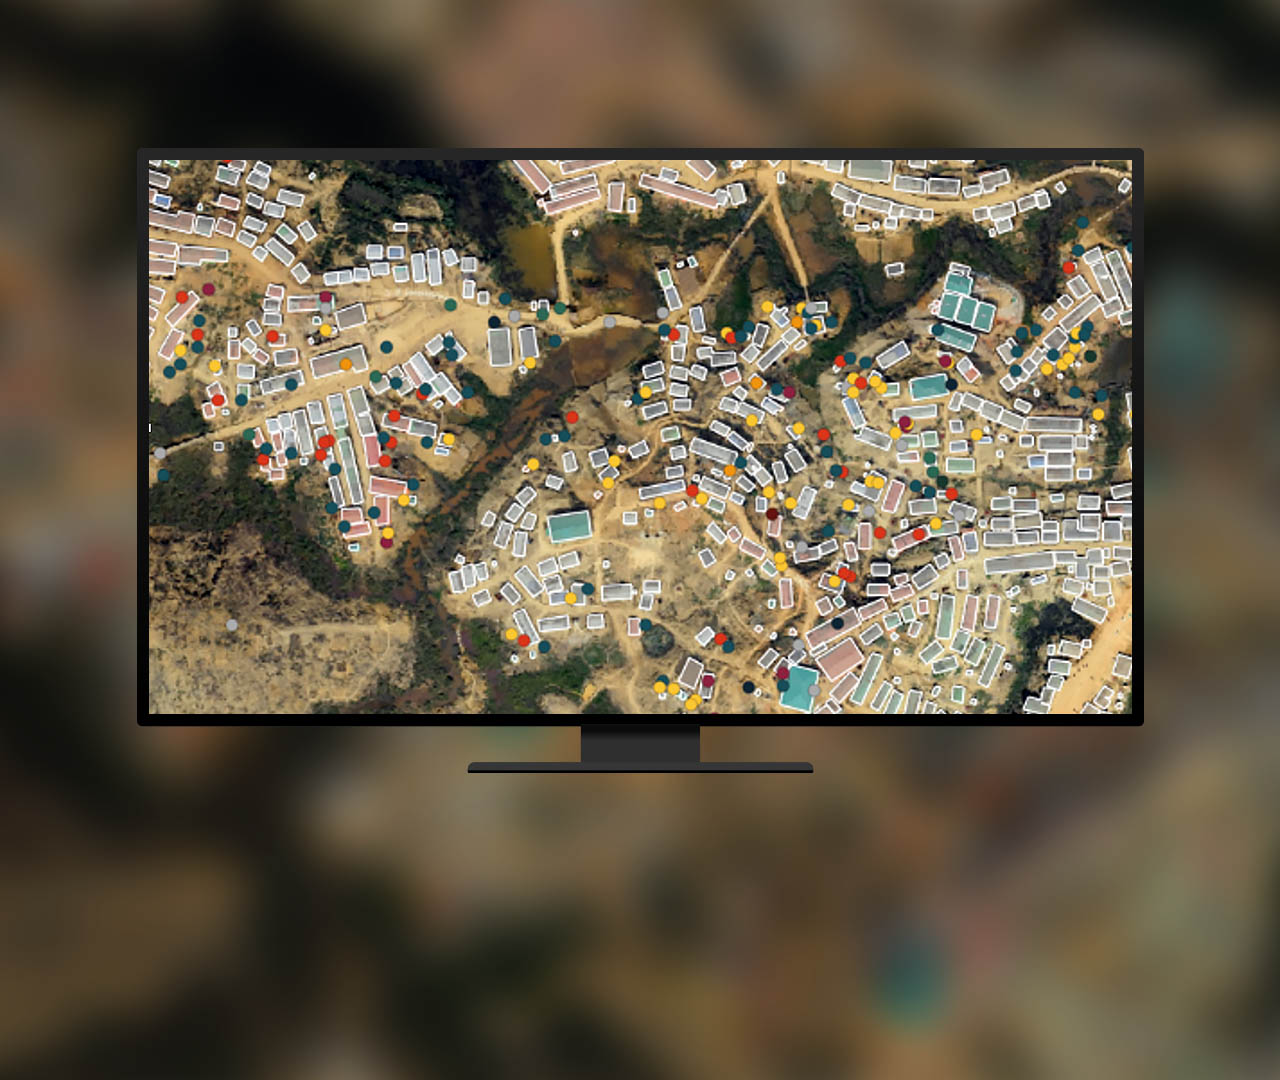 Luftbild von einer Vorstadt, bei dem durch weiße Rechtecke und mehrfarbige Punkte gekennzeichnete Objekte wie Gebäude und Autos mithilfe von KI klassifiziert werden